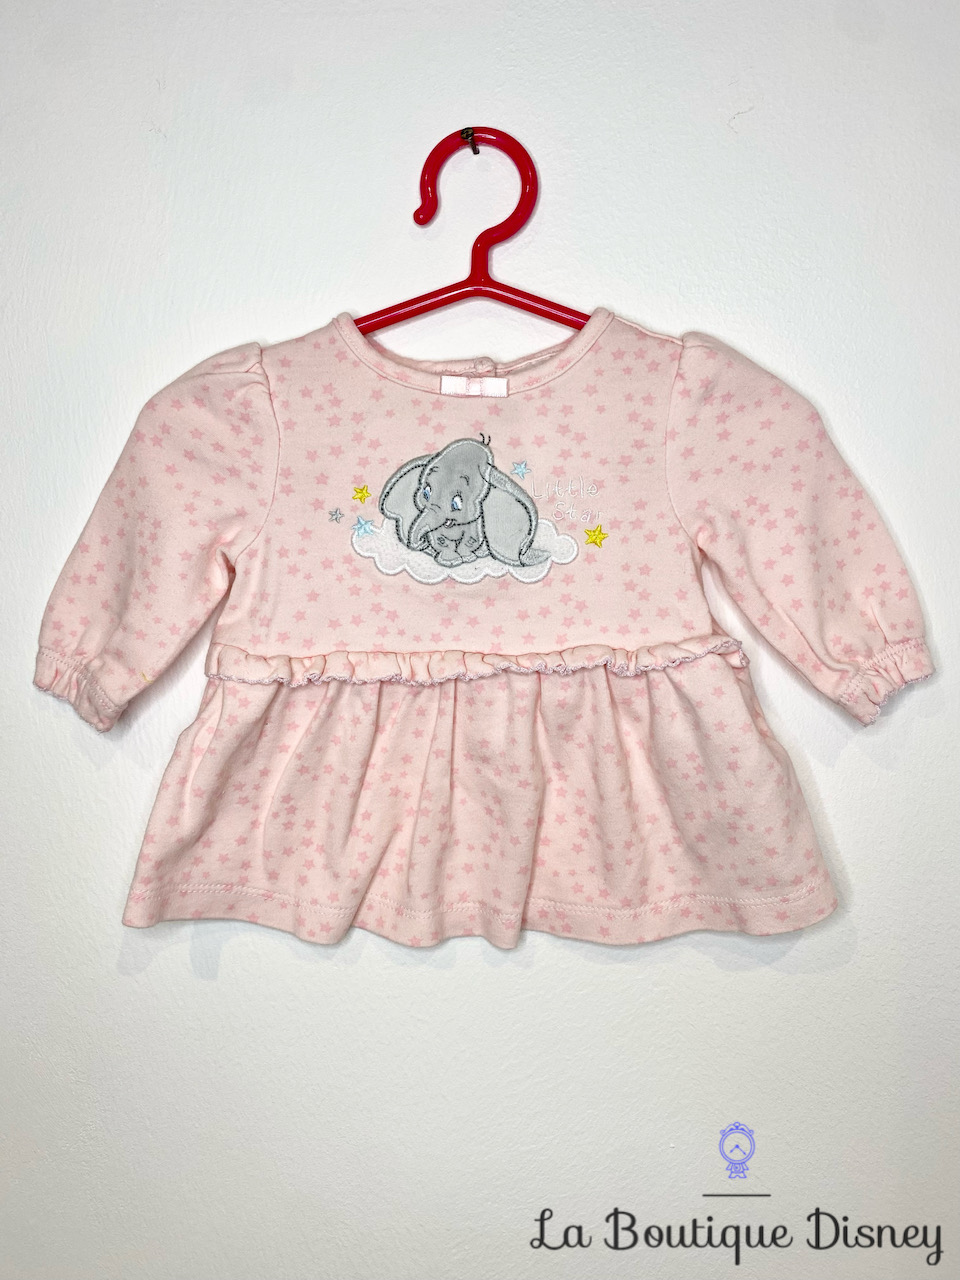 Robe Dumbo Disney Baby by Disney Store taille 0-3 mois rose étoiles Little star